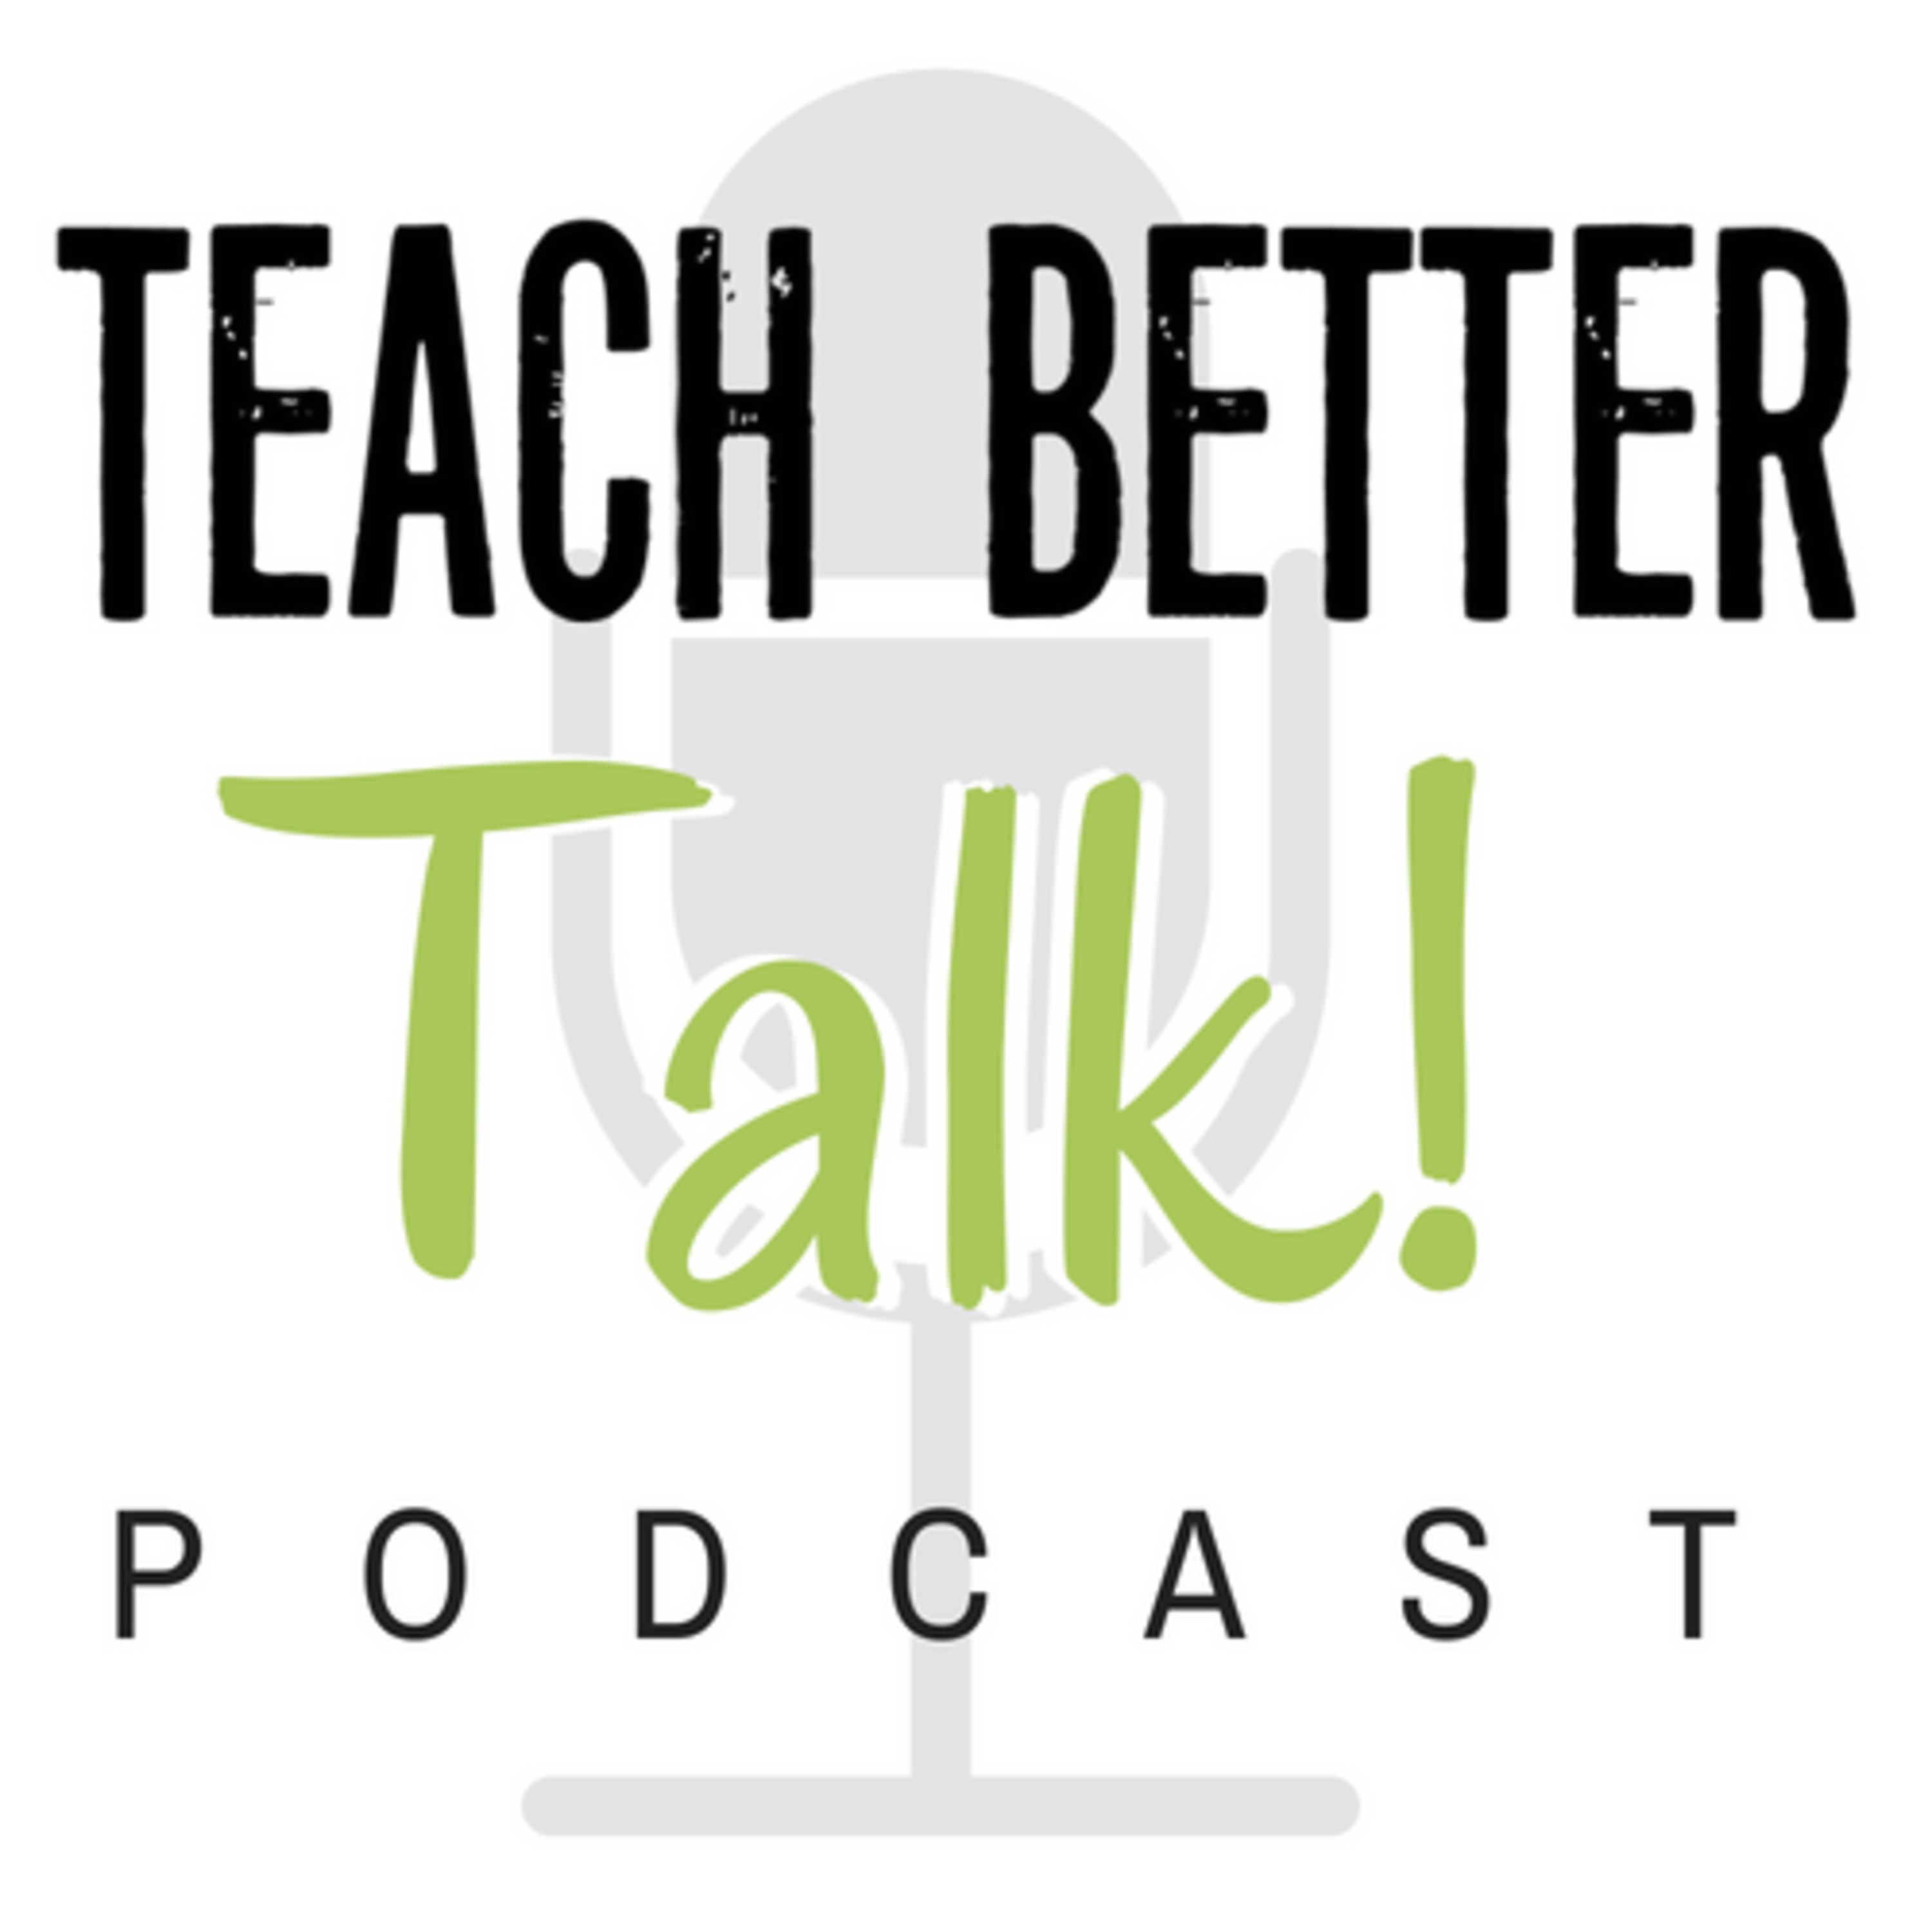 teach better talk